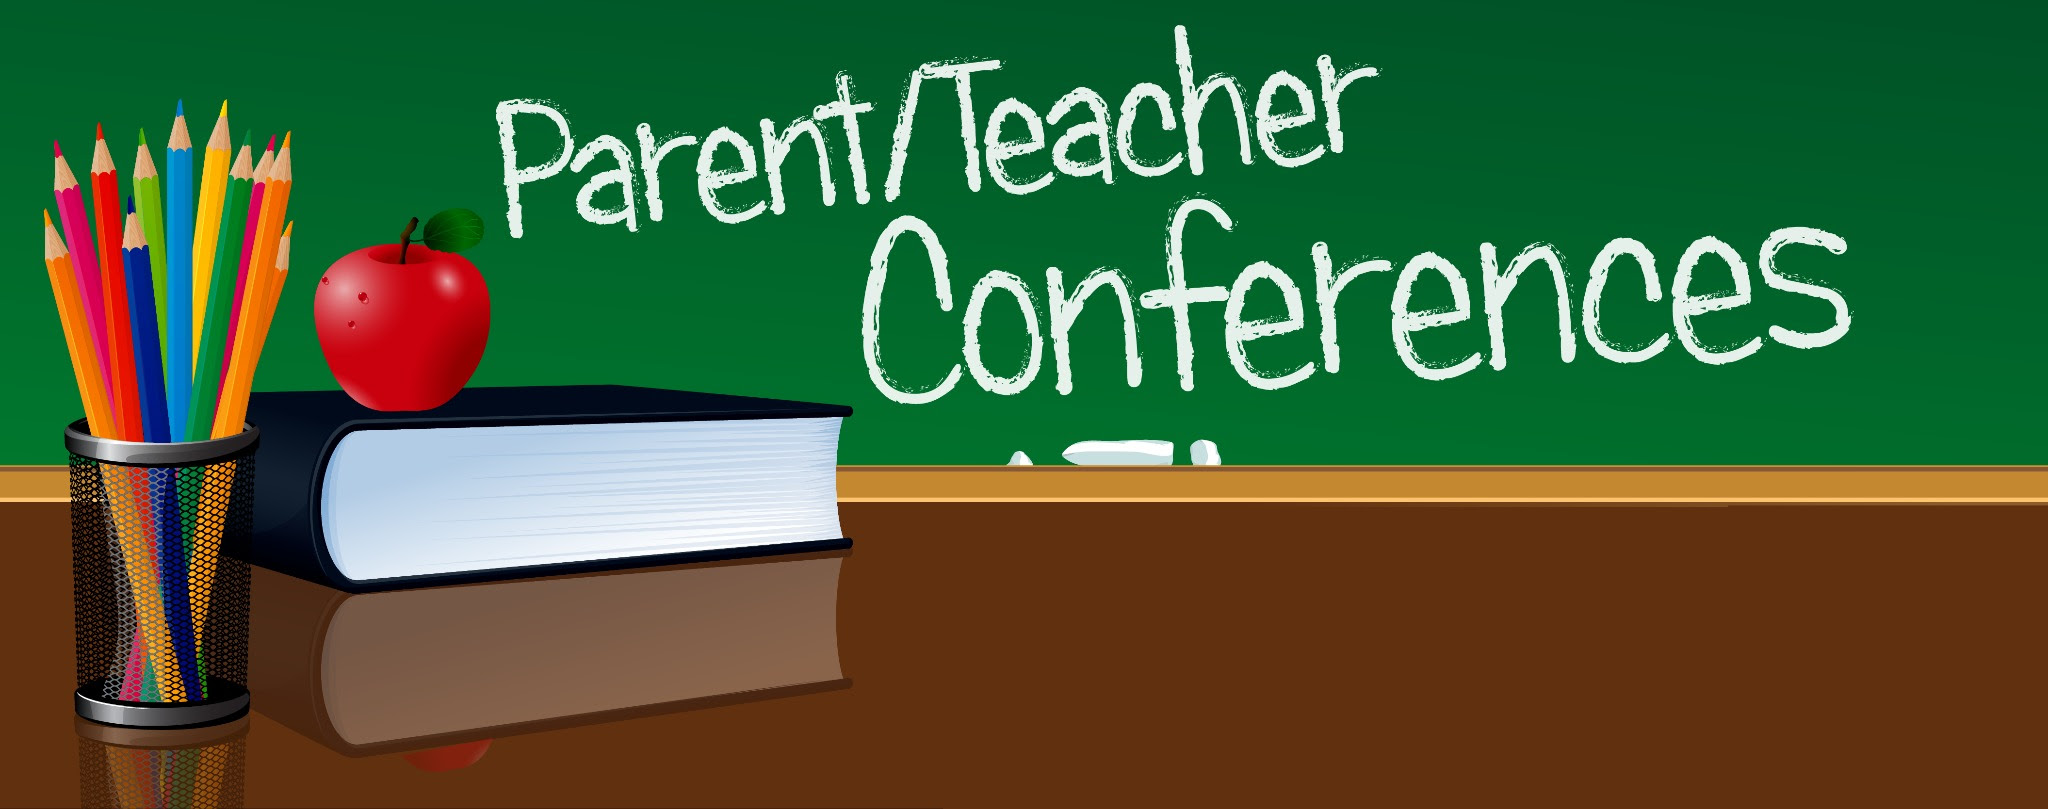 Parent teacher Conference. Parent - teacher 7) Conference.